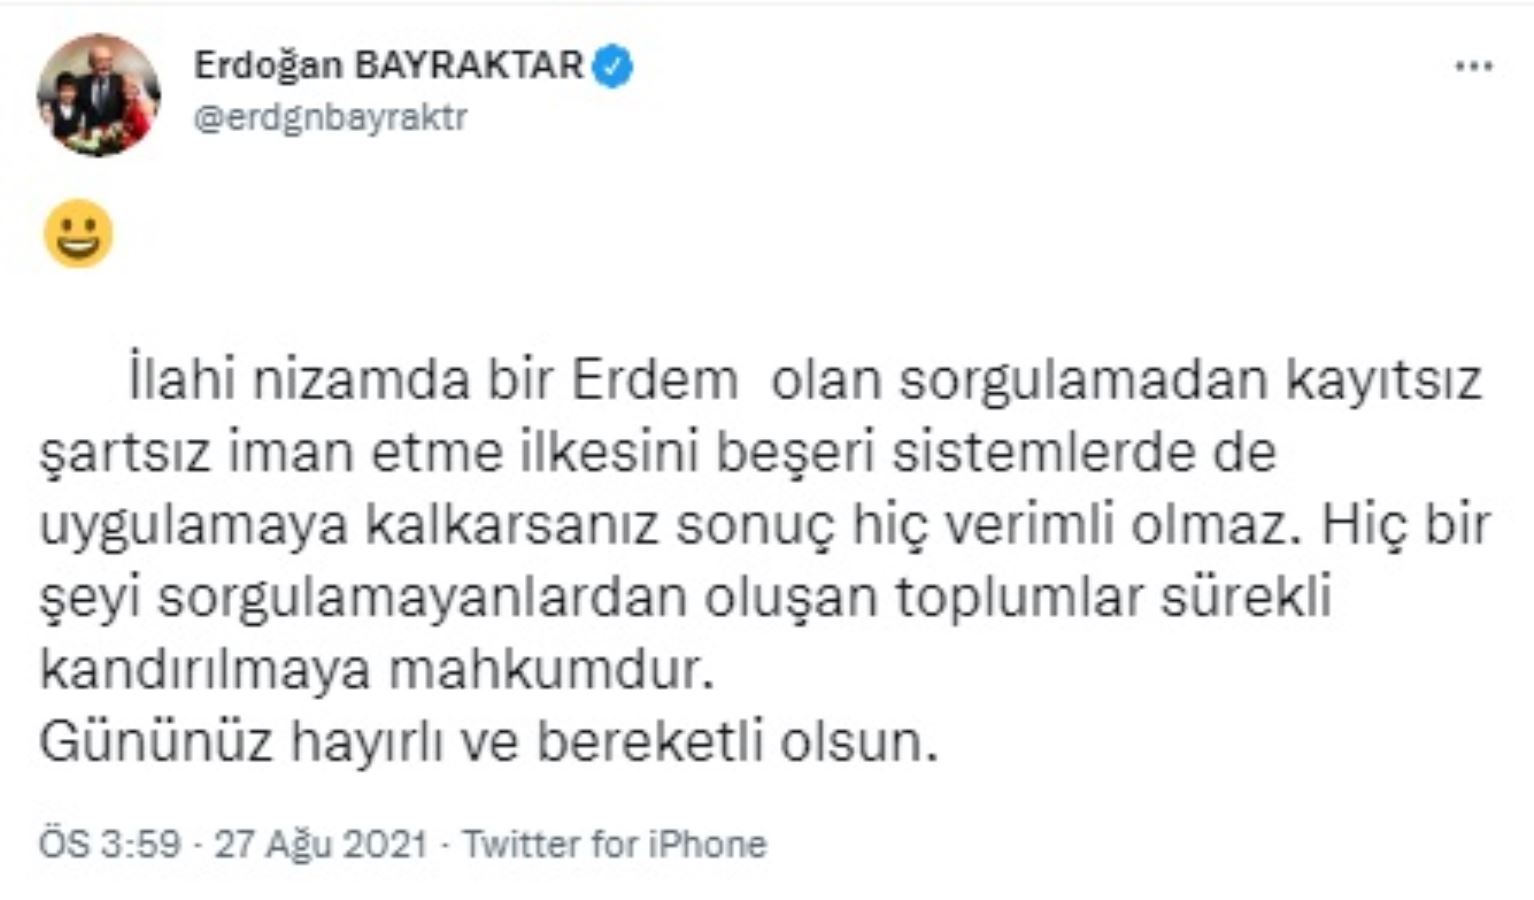 Eski bakan Erdoğan Bayraktar'dan bir 'ayar' daha